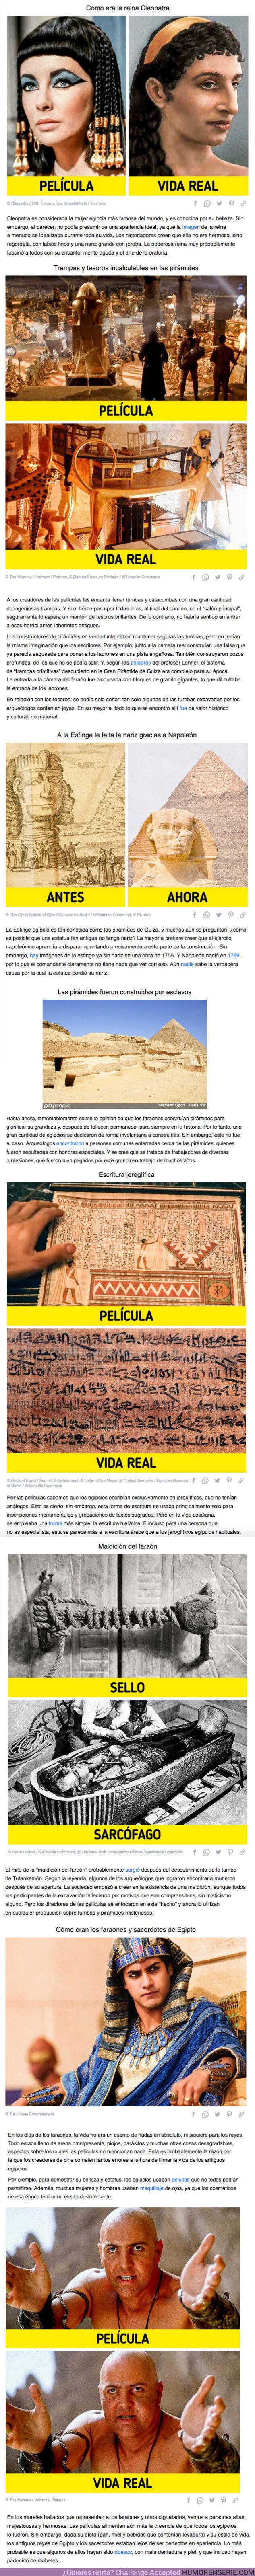 73137 - GALERÍA: 7 Estereotipos molestos sobre el antiguo Egipto que quedaron grabados en nuestras mentes debido al cine